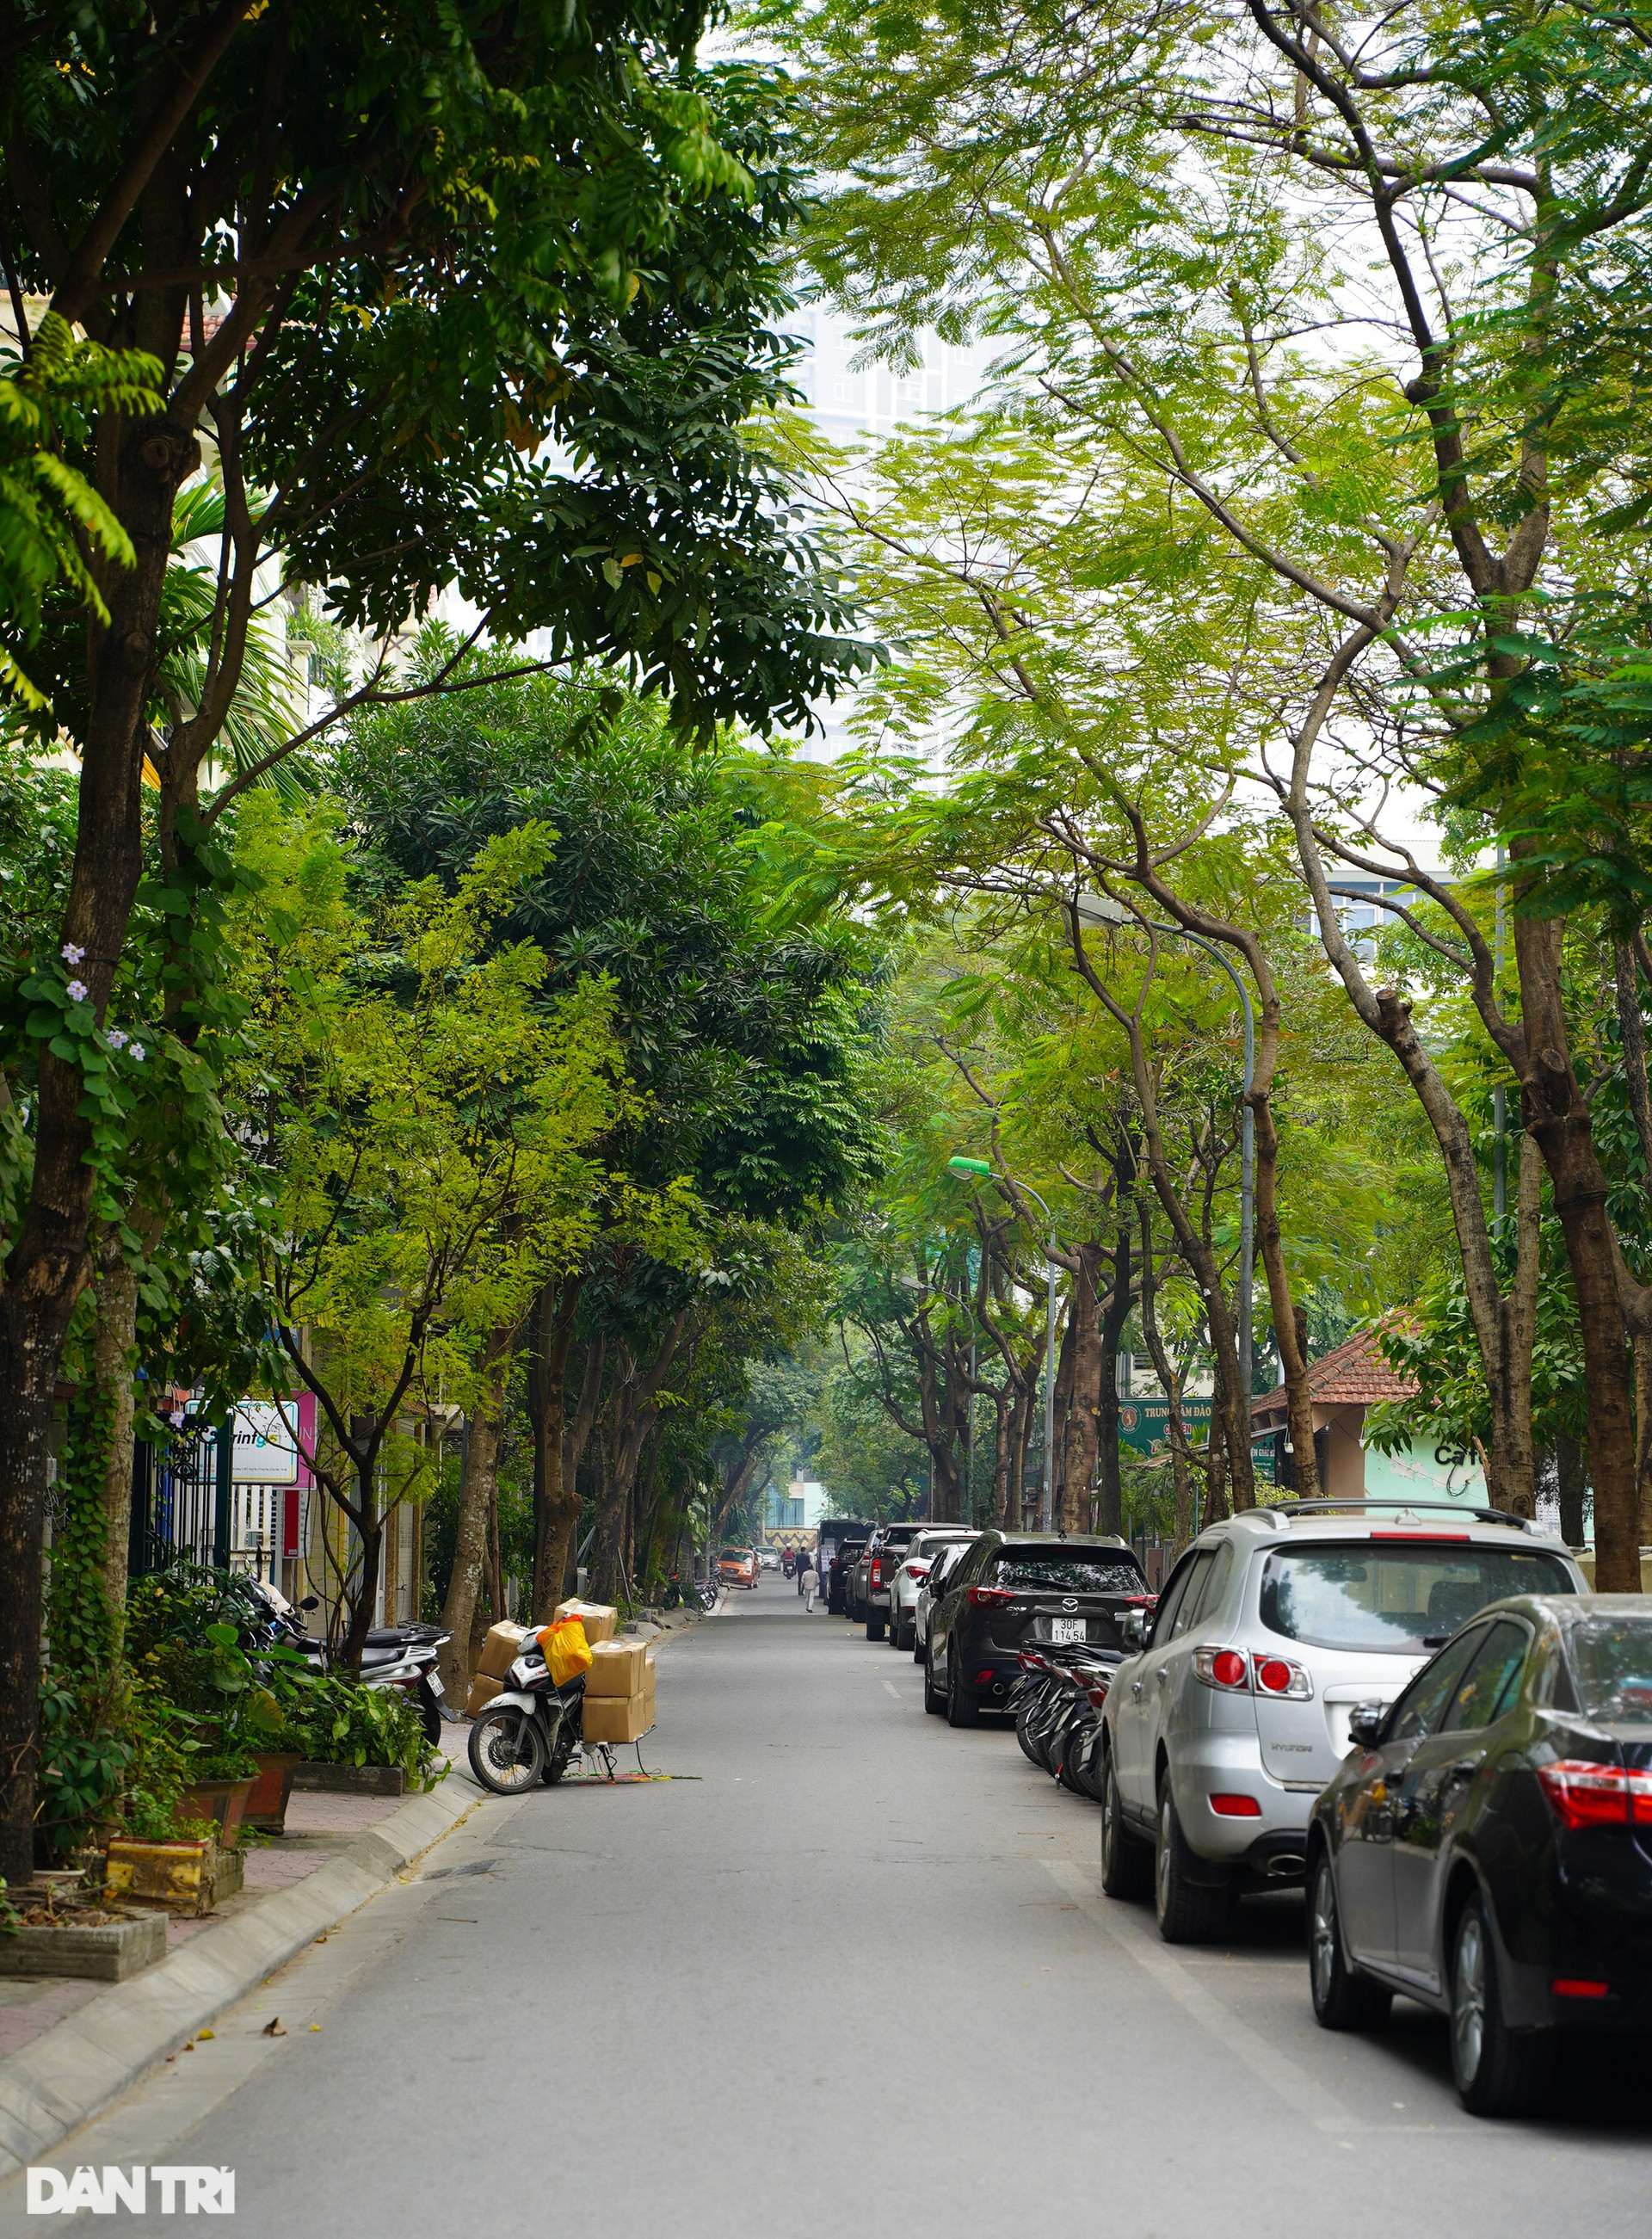 Cận cảnh 2 phố ở Hà Nội vừa được đặt tên nhà thơ Lưu Quang Vũ và Xuân Quỳnh - 9